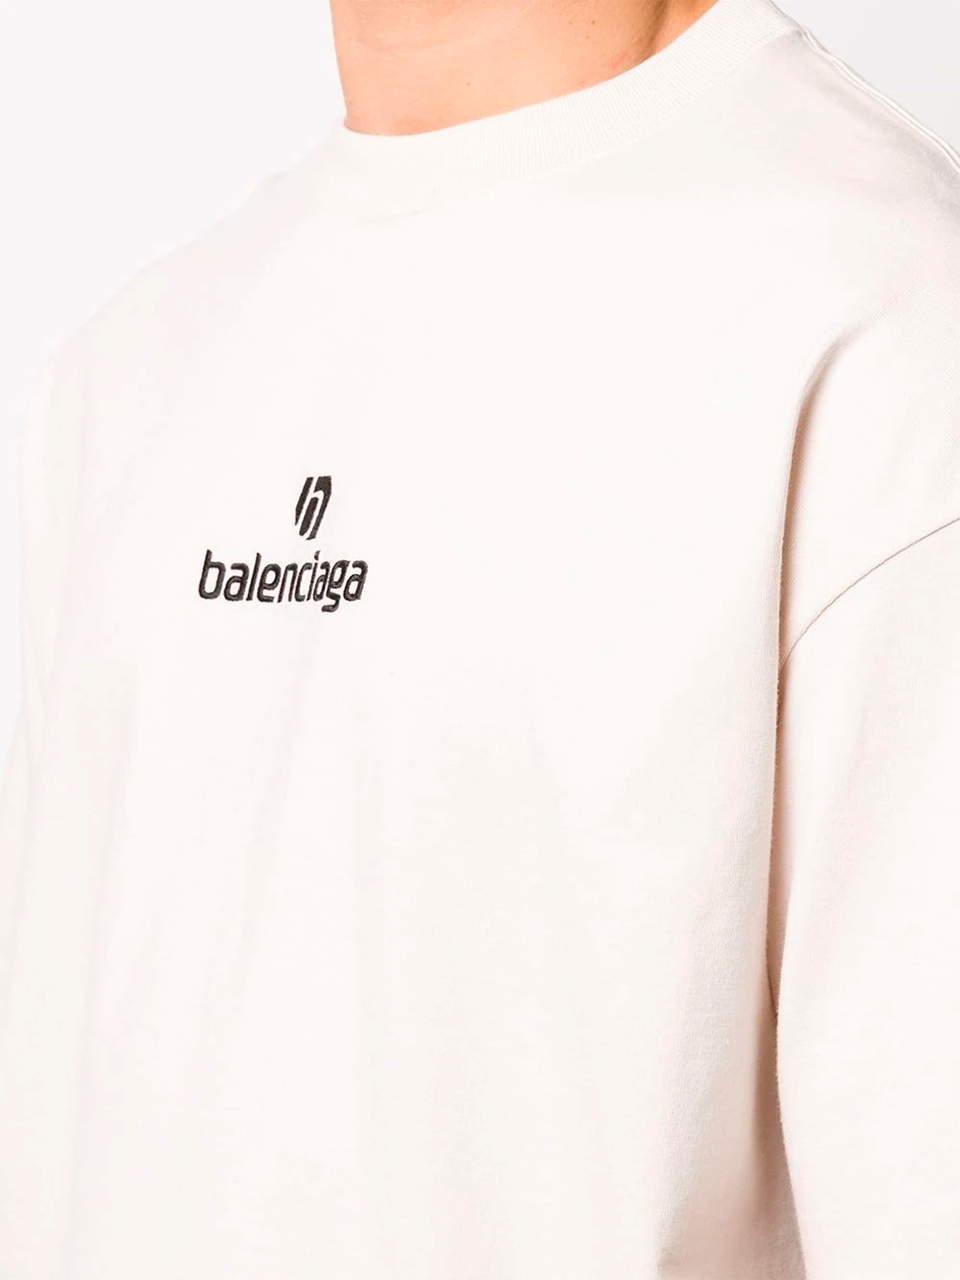 Imagem de: Camiseta Balenciaga Branca com Logo Sponsor